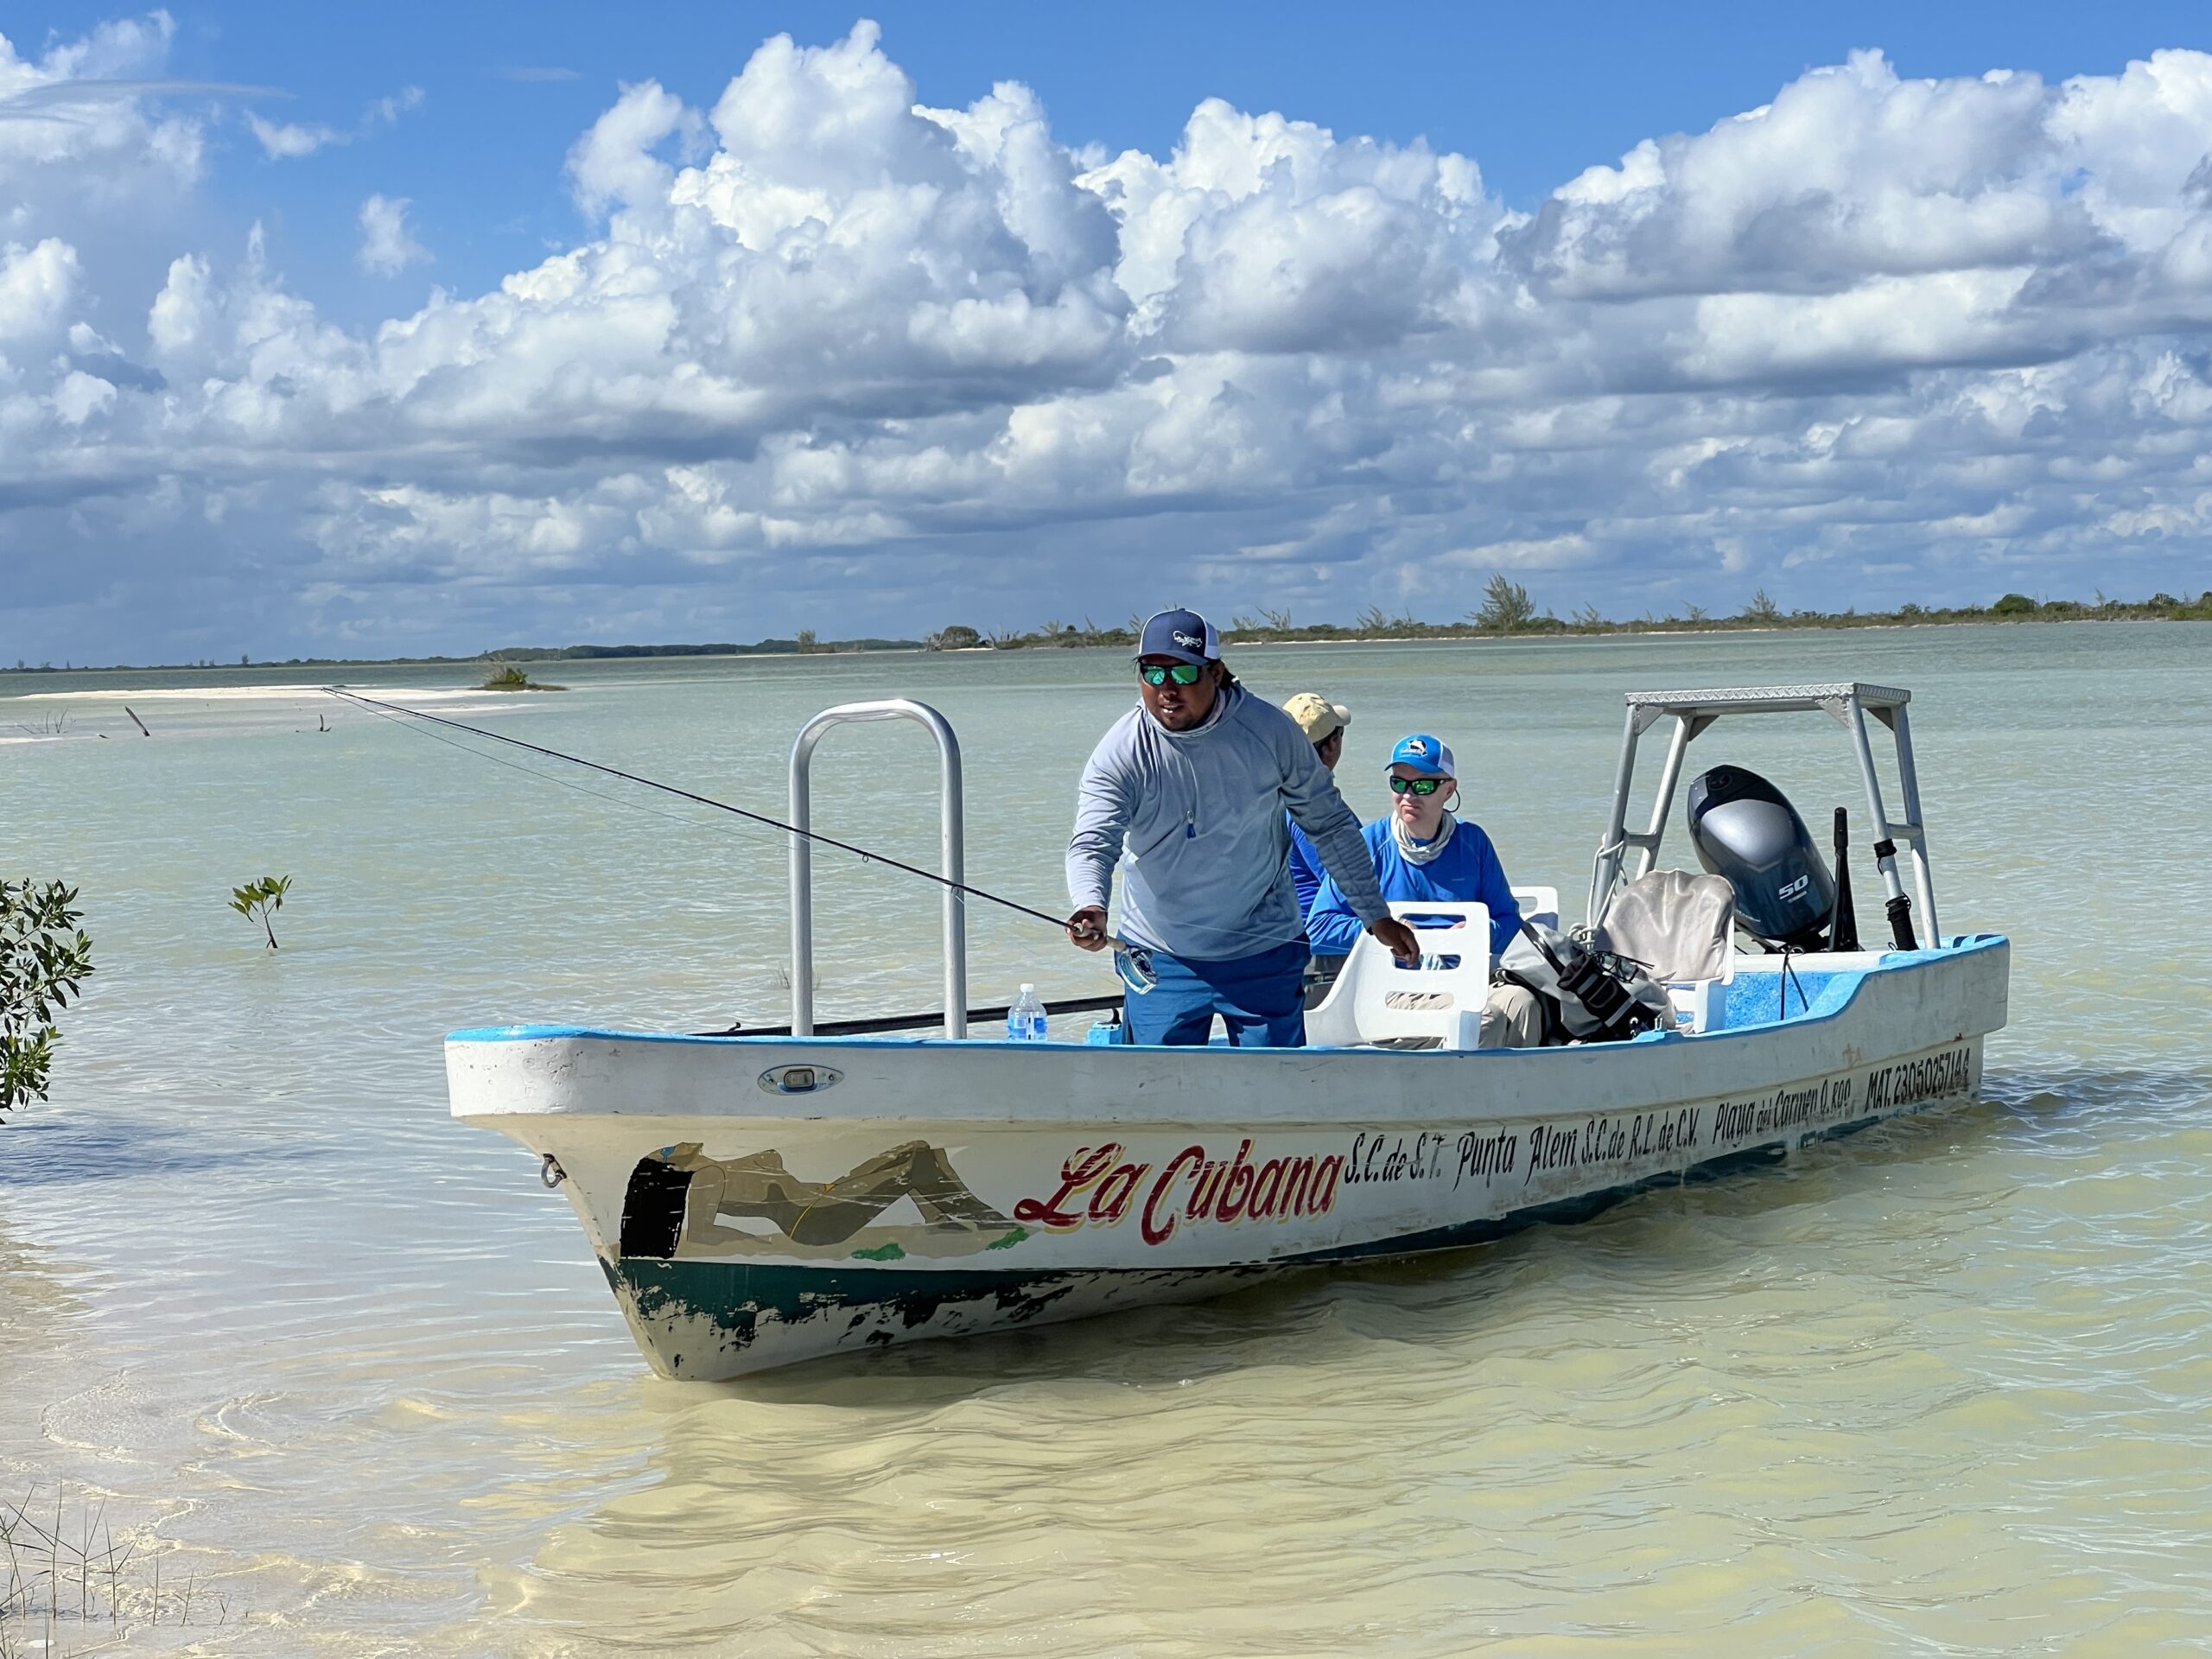 meksiko mexico ascensionbay flyfishing flugfiske perhokalastus permit tarpon bonefish kalastus perhokalastusmatka saltwaterflyfishing tropicalflyfishing kalastusmatka fishmaster globalfishing